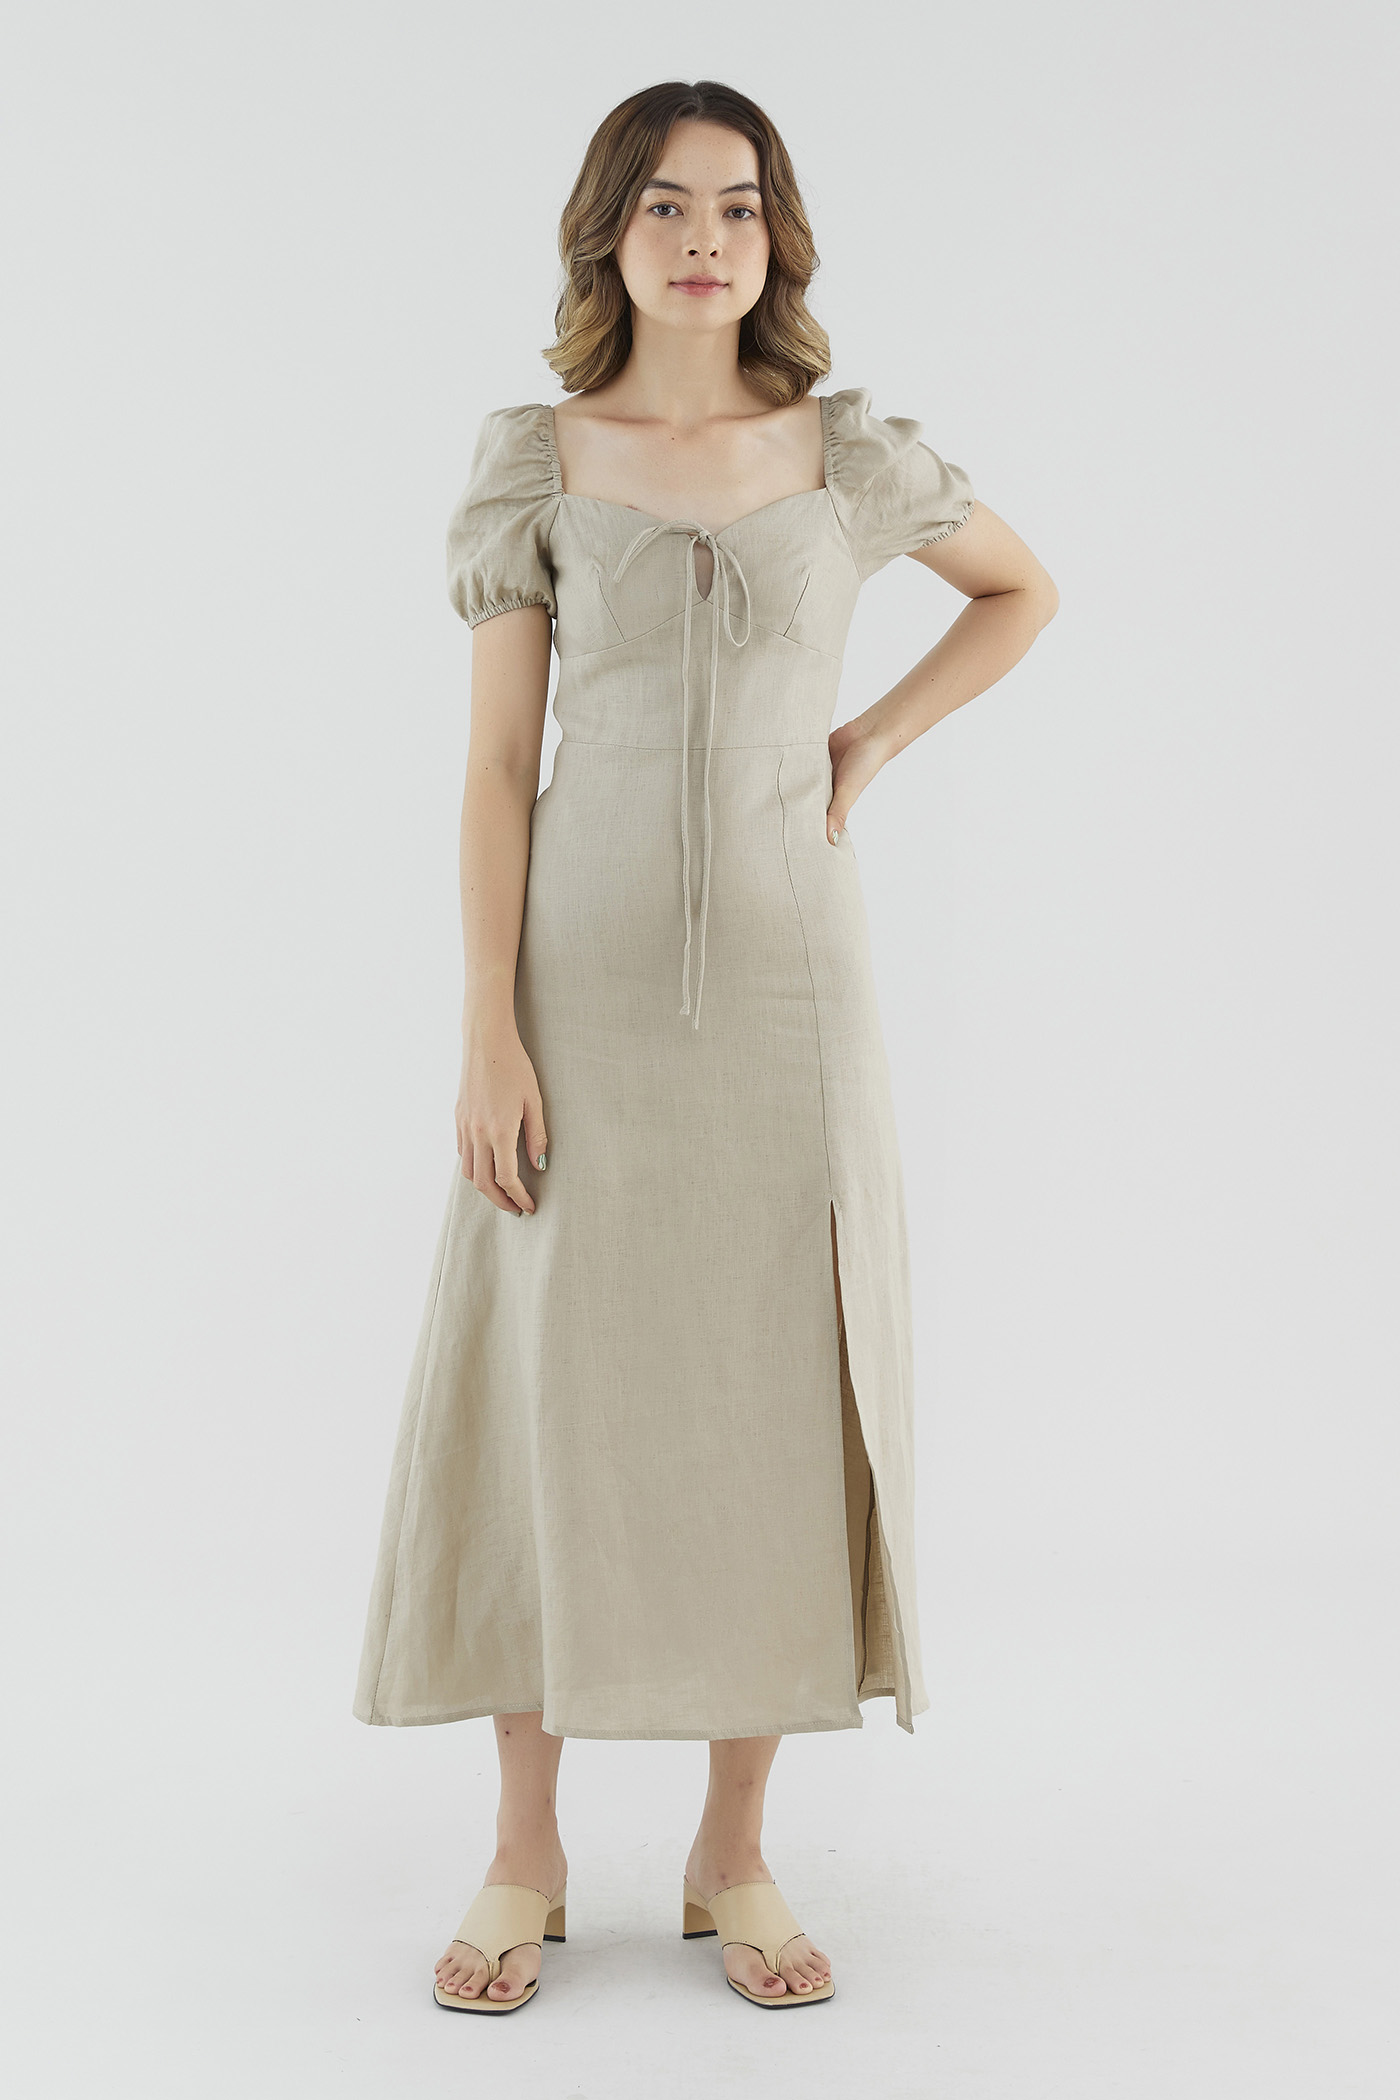 Clarene Linen Tie-Front Dress